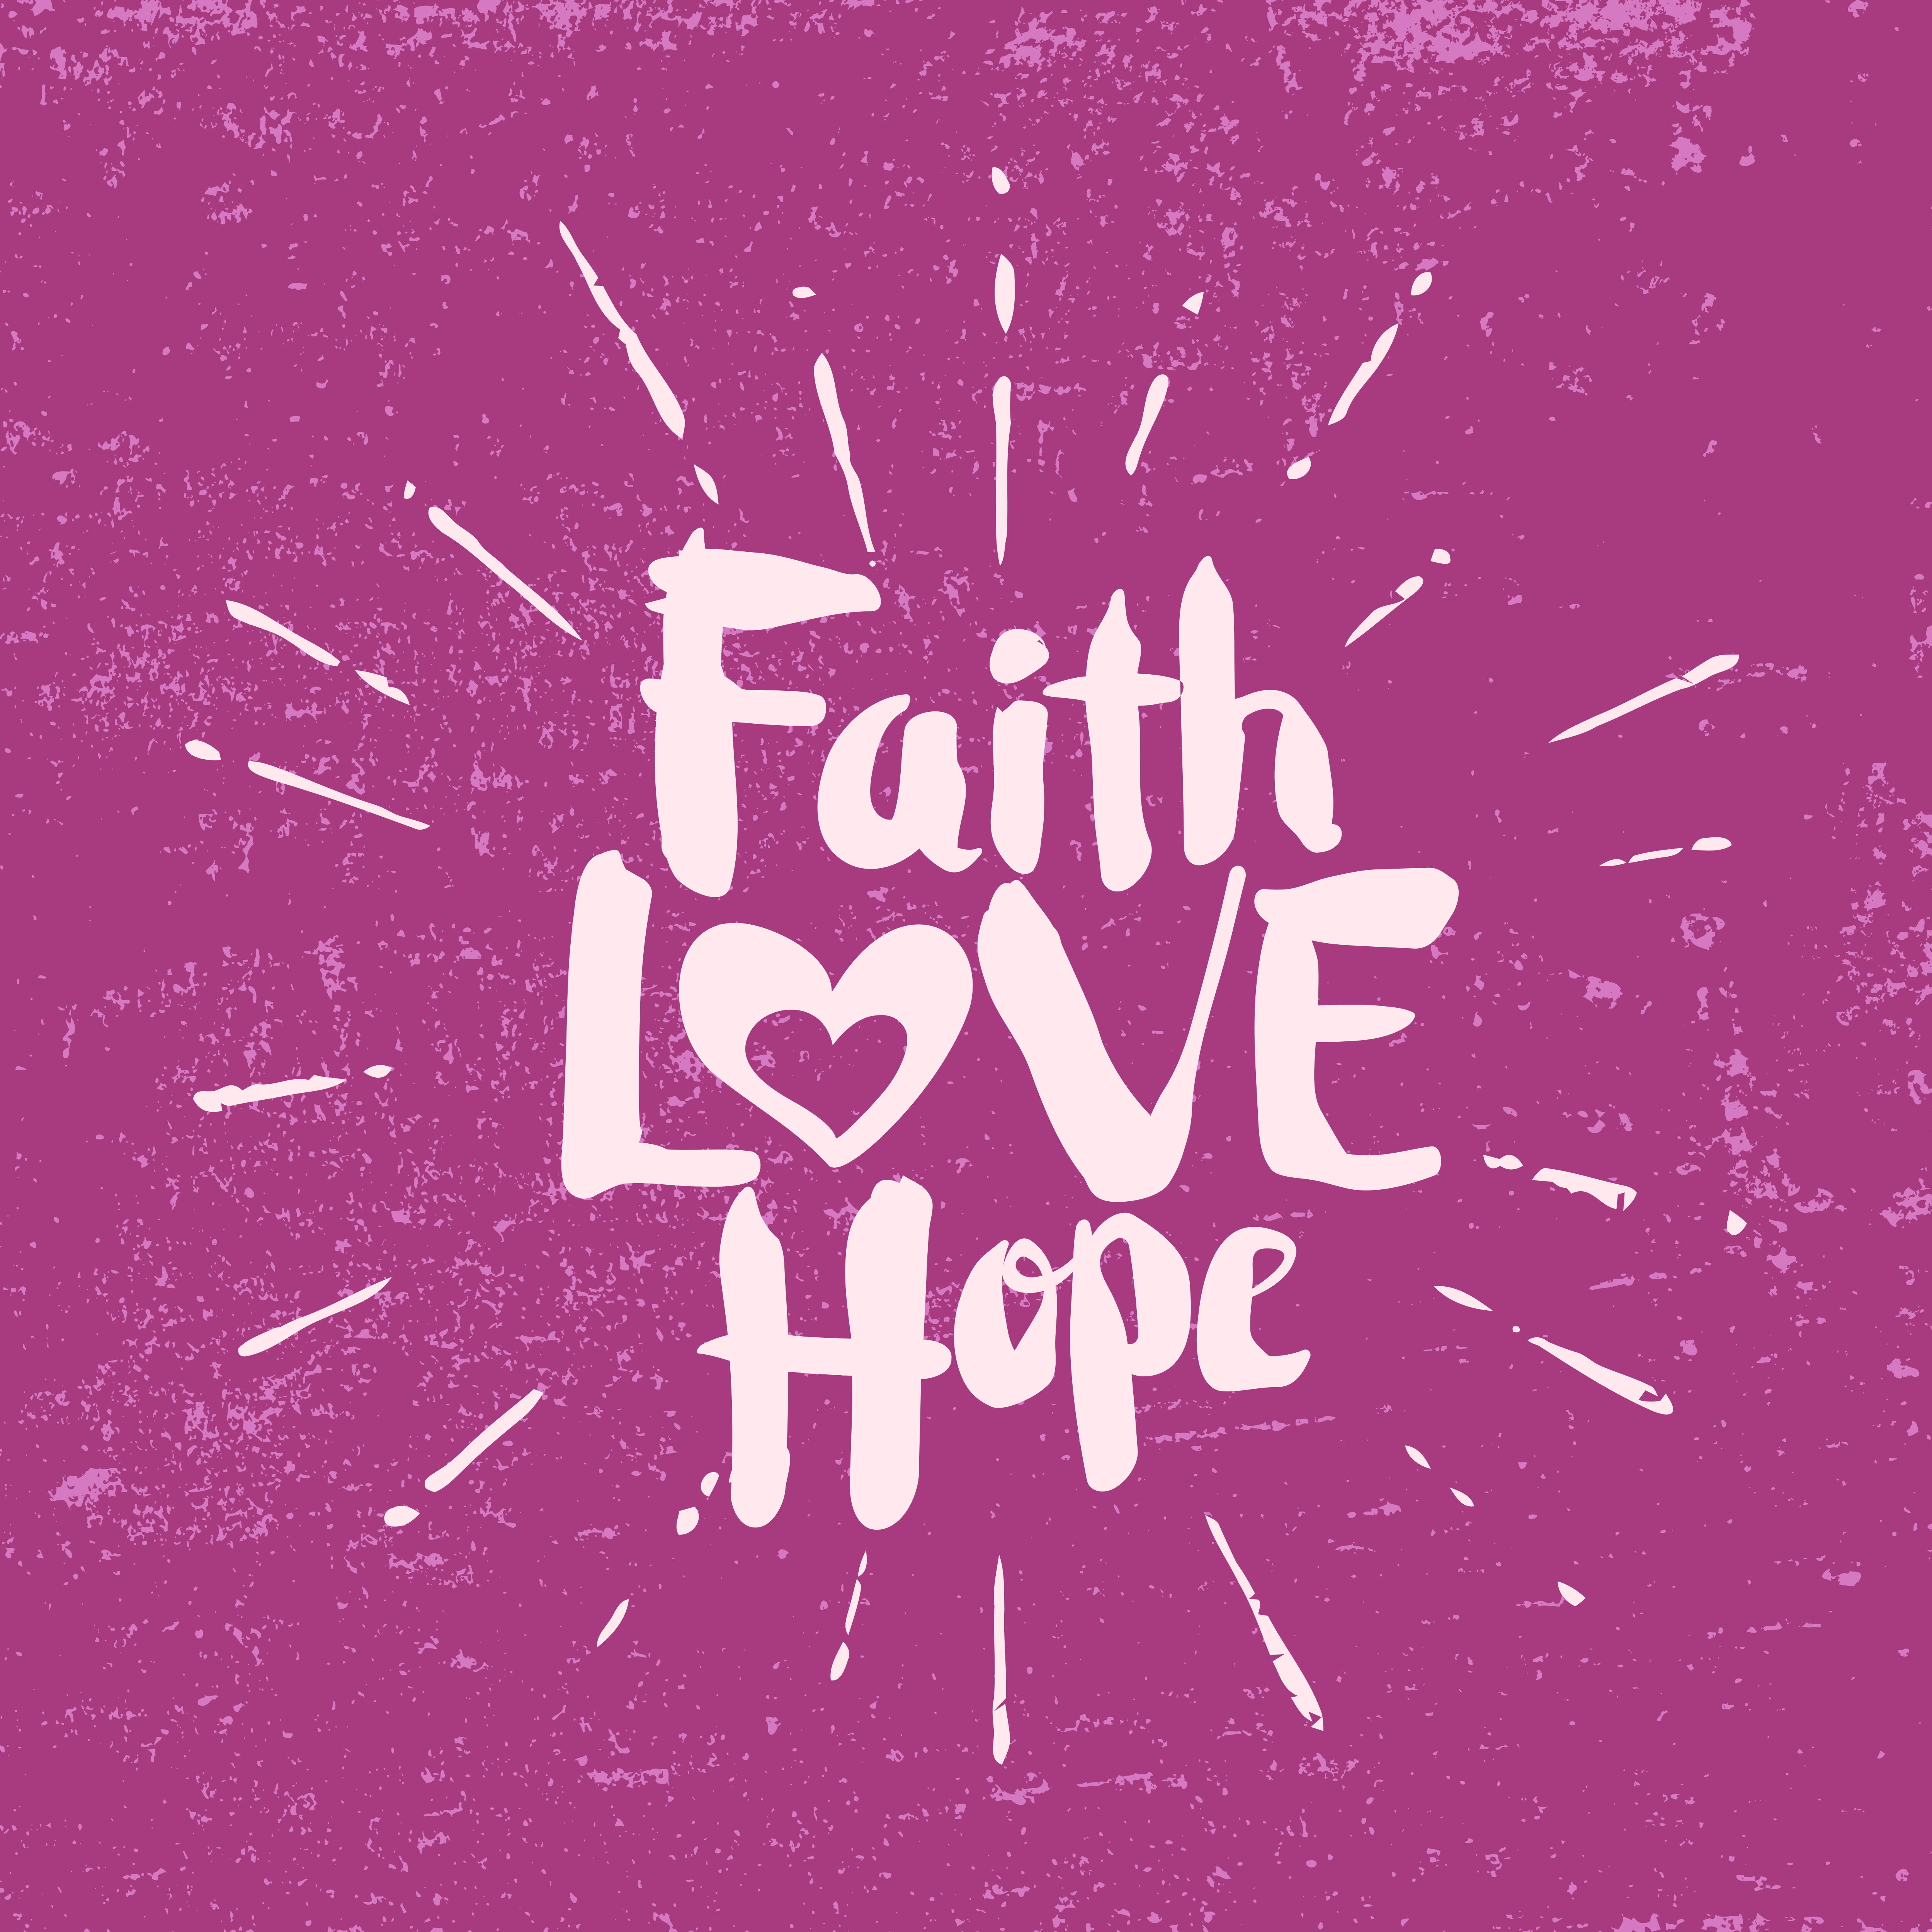 46946092 - faith, hope, love. lettering.